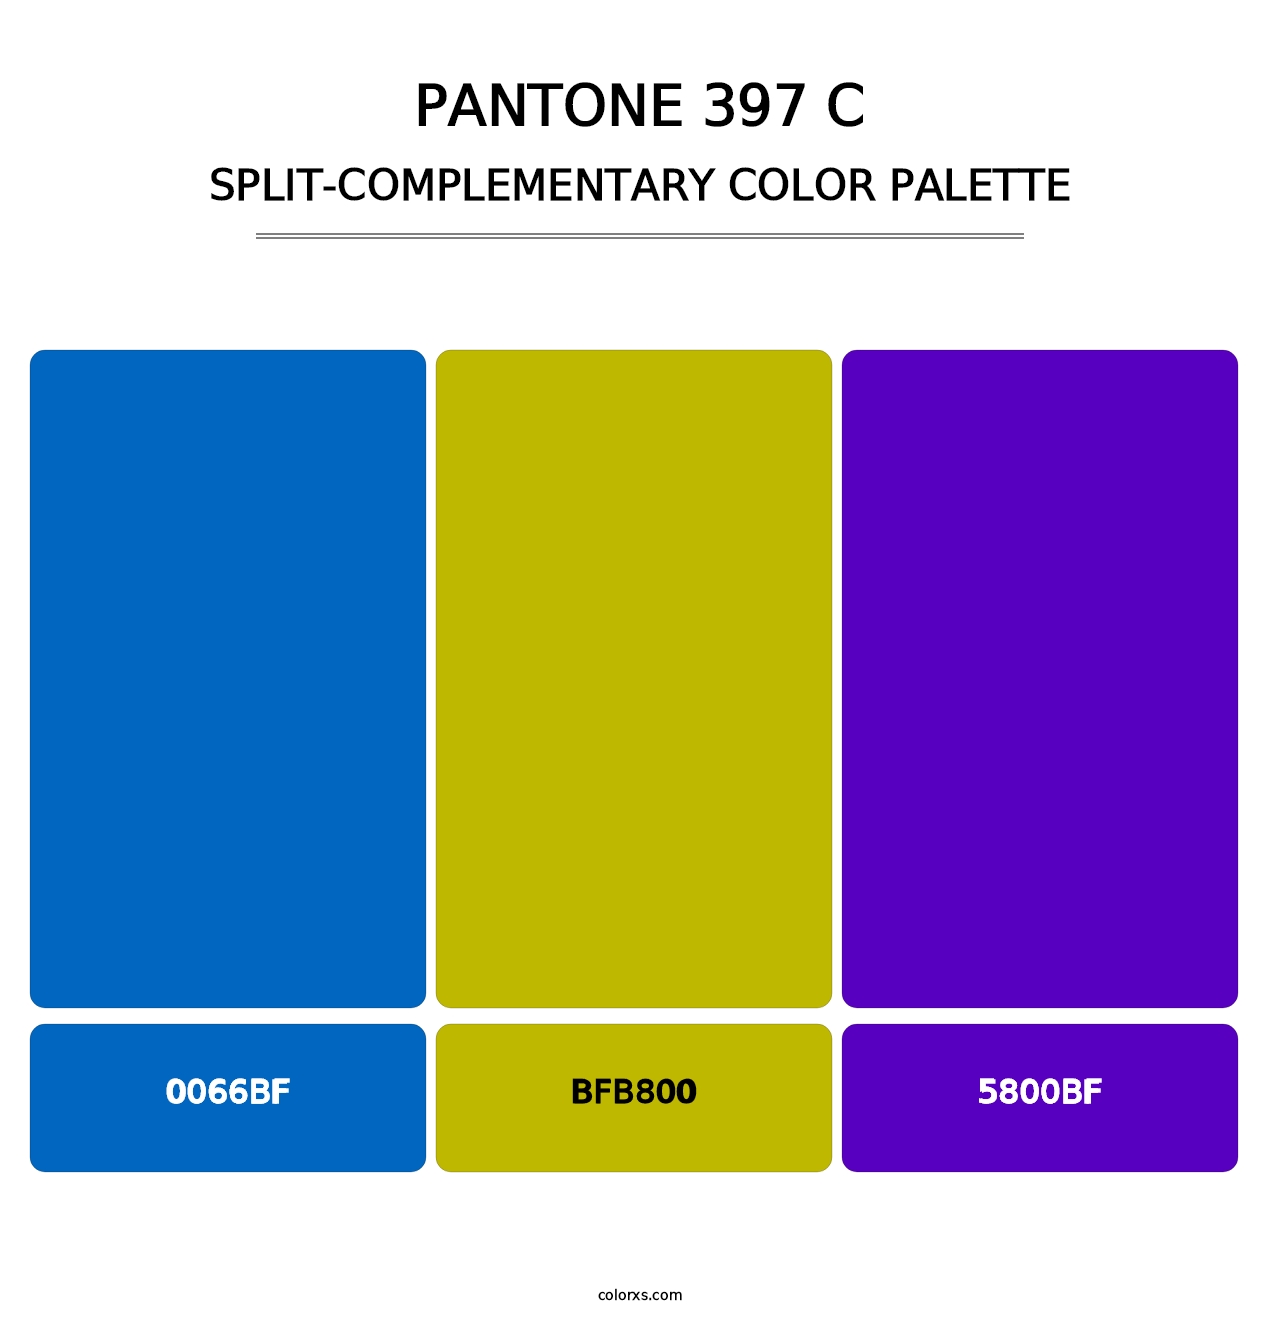 PANTONE 397 C - Split-Complementary Color Palette